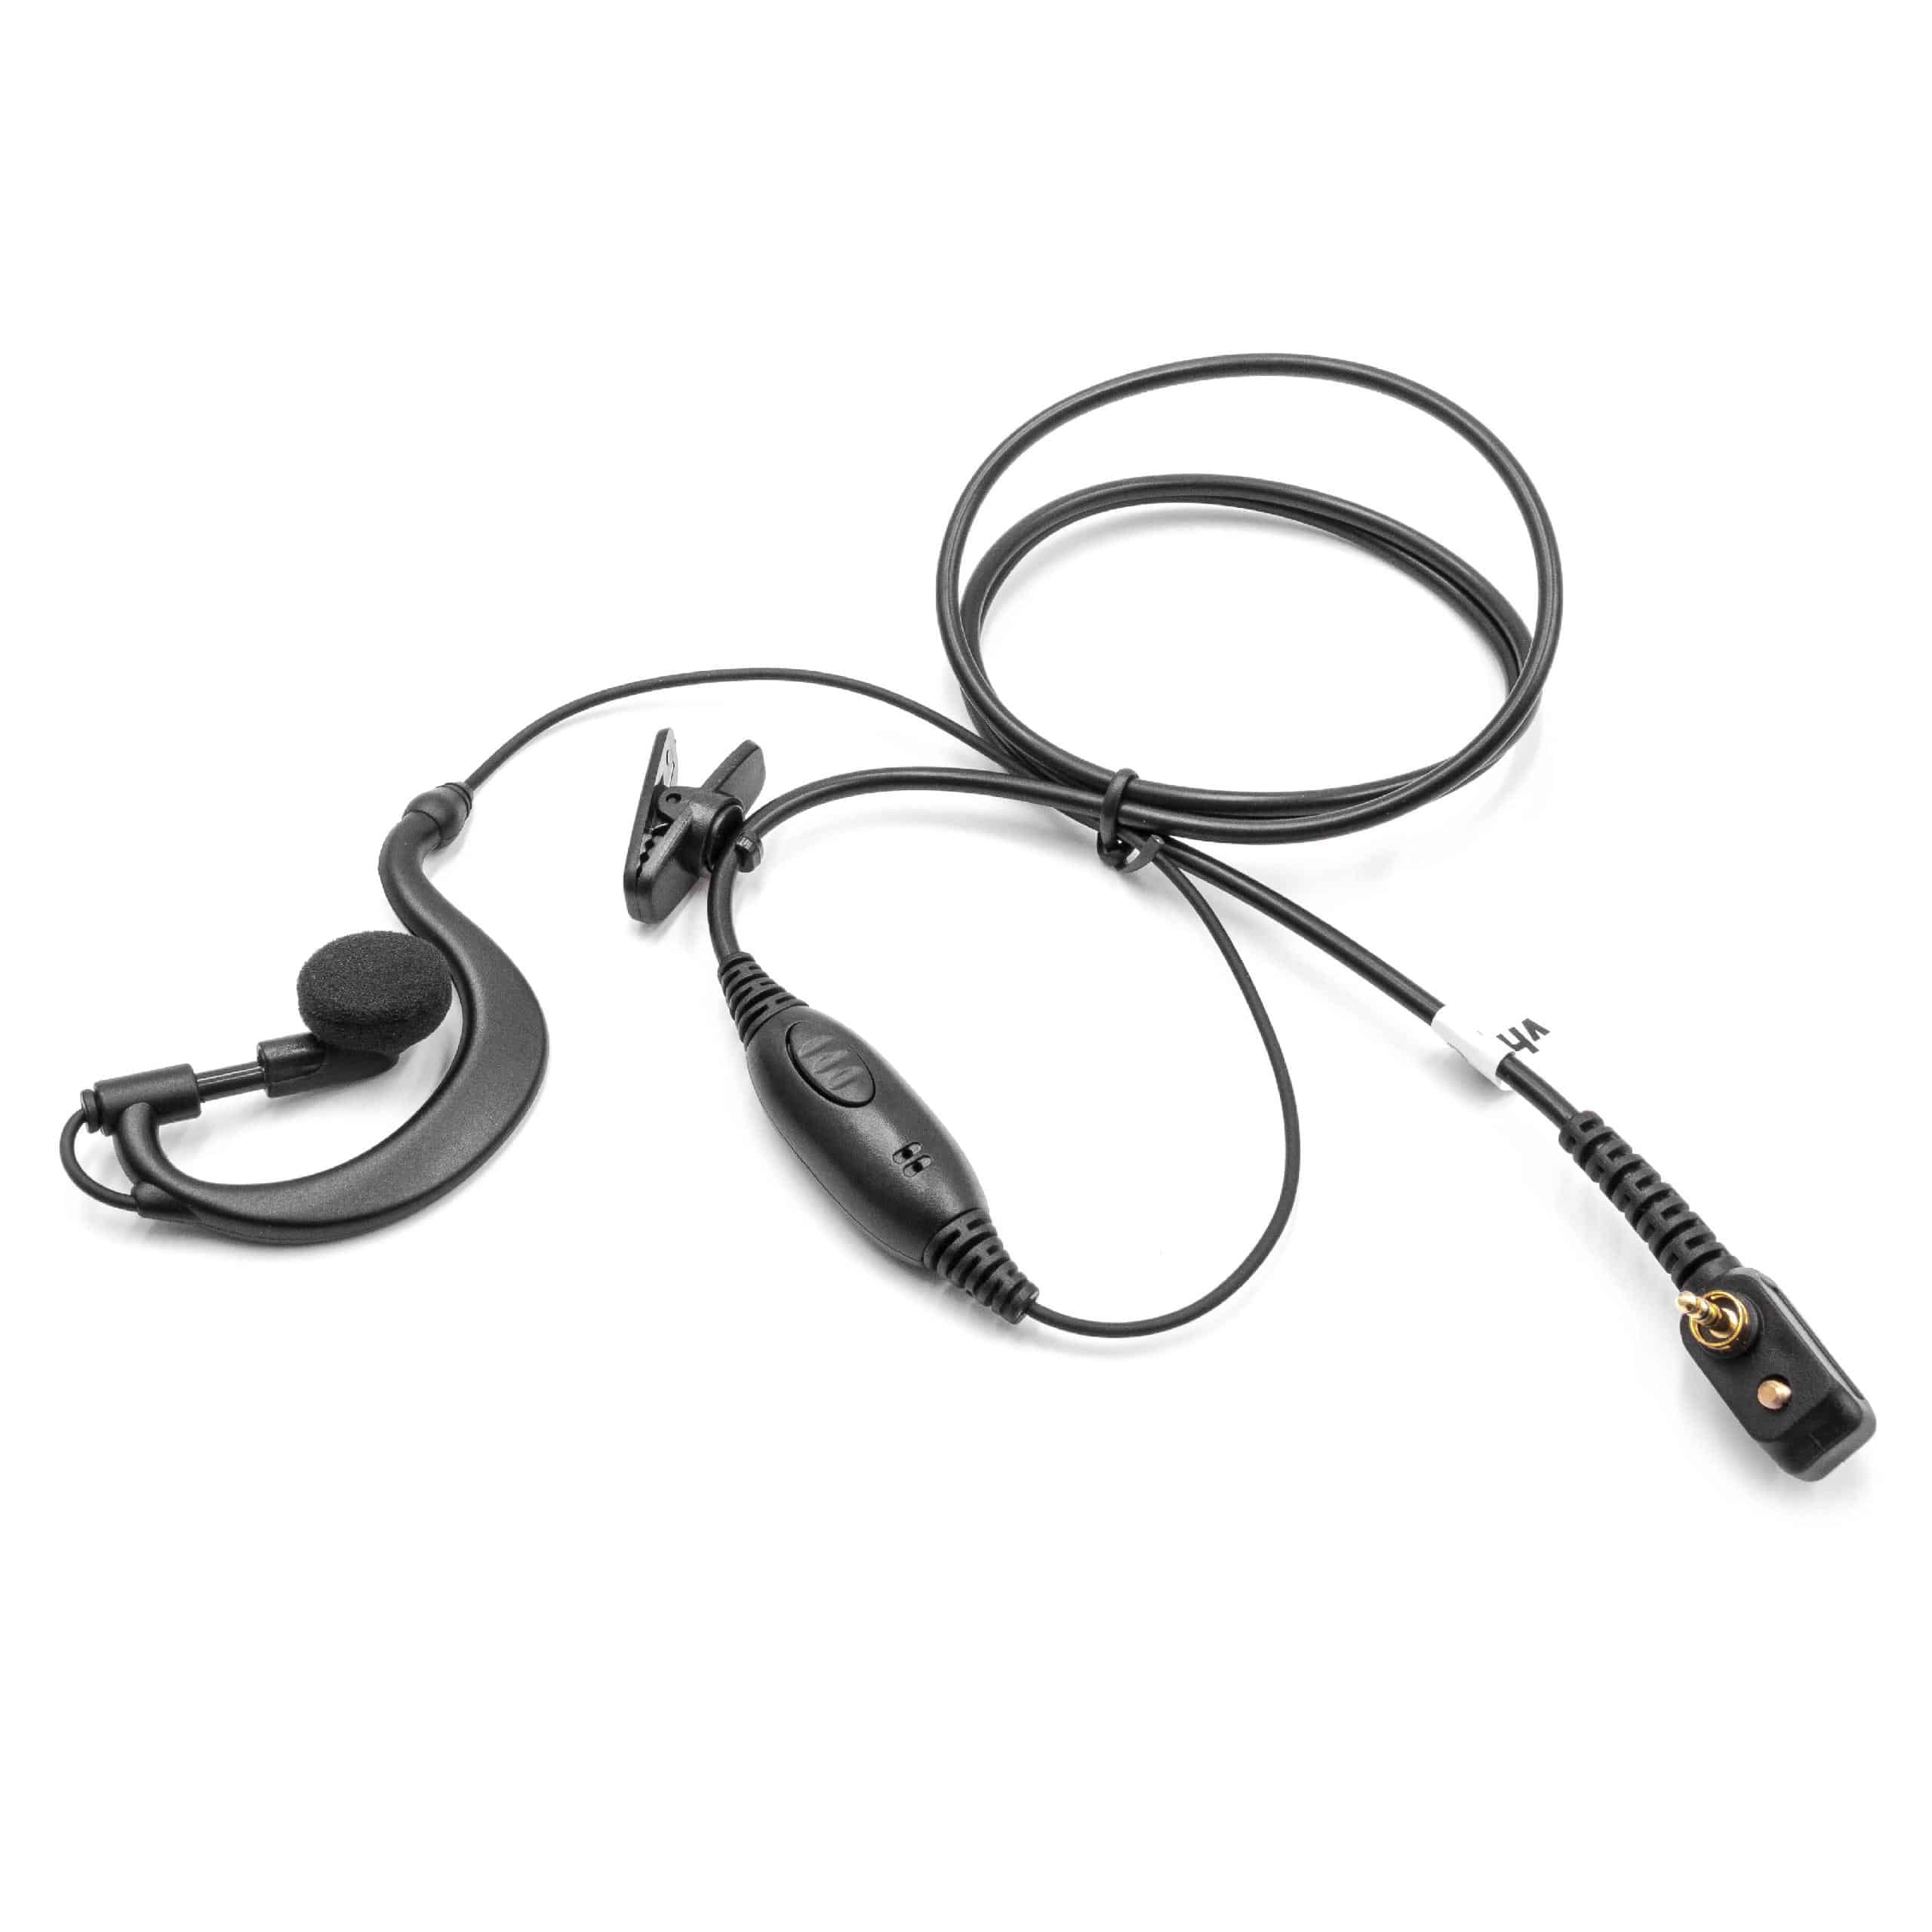 Słuchawka z mikrofonem do radiotelefonu Motorola zamiennik Motorola FTN6583- przycisk odbioru połączeń + klips